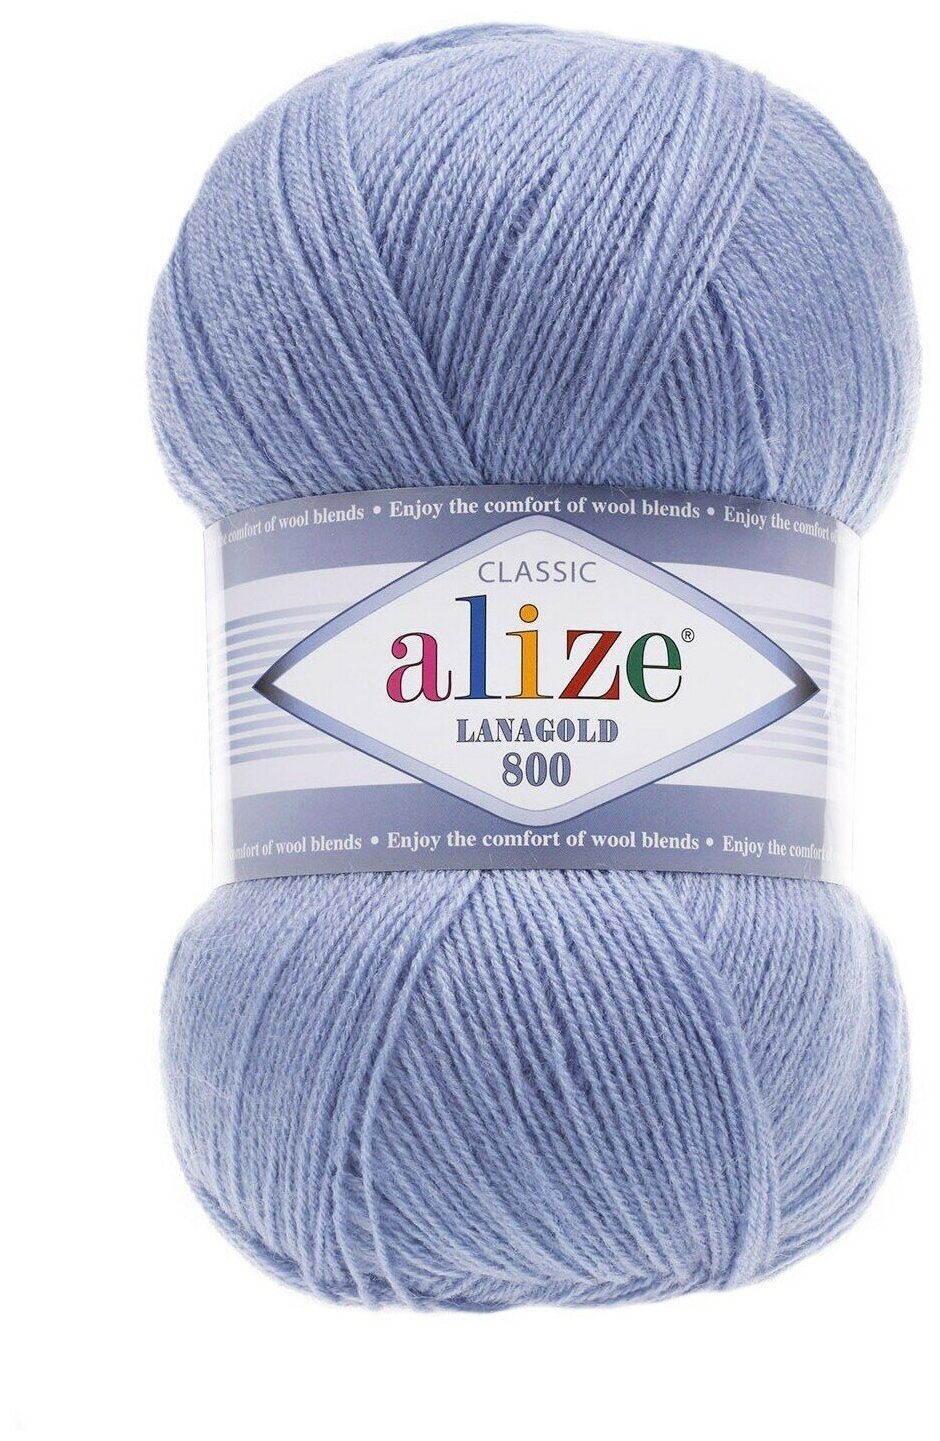 Пряжа Alize Lanagold 800 голубой (40), 51%акрил/49%шерсть, 800м, 100г, 2шт